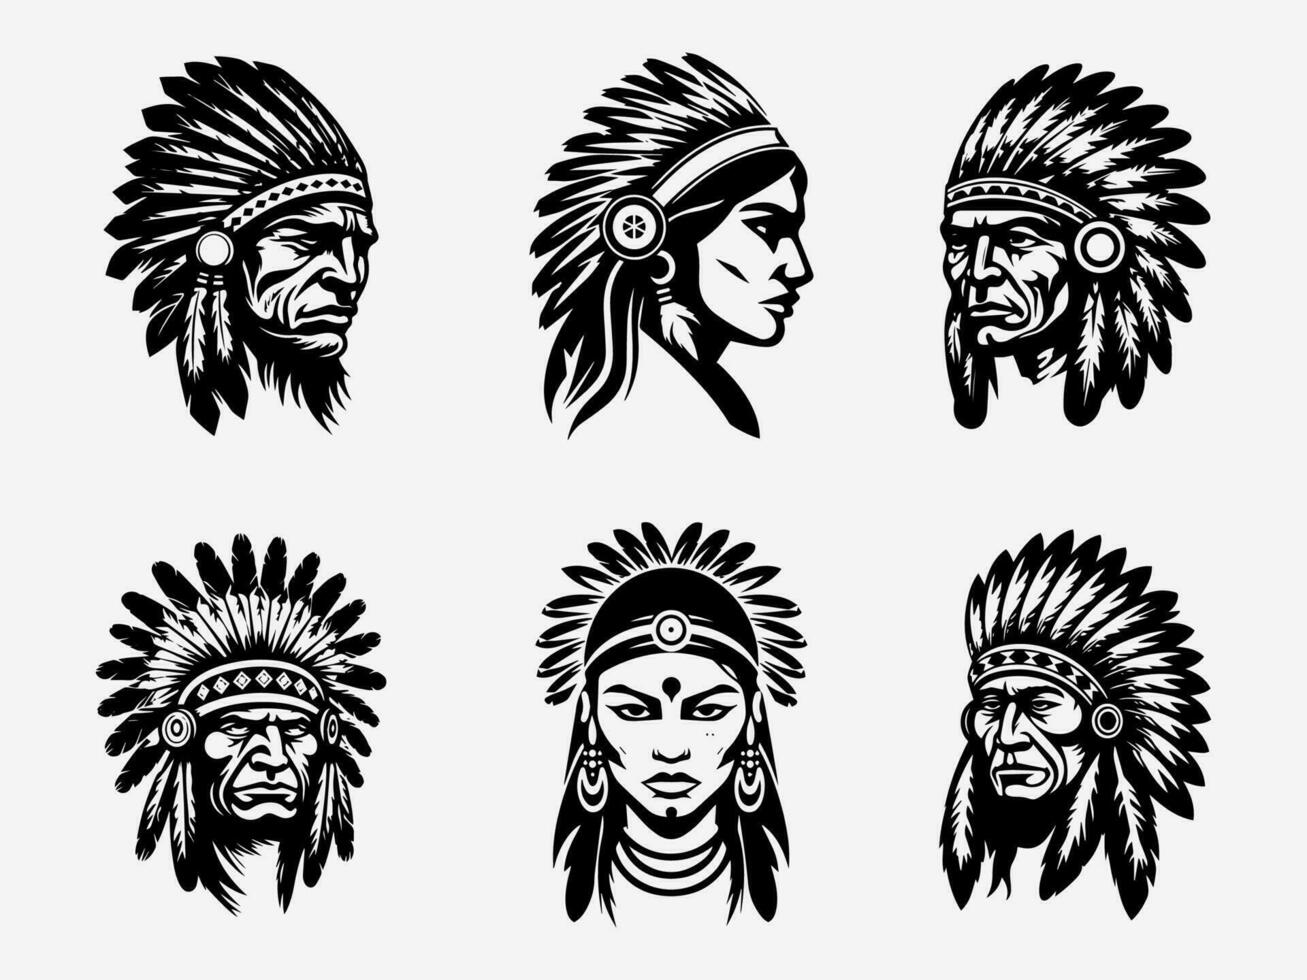 äkta hand dragen illustration av en inföding amerikan indisk huvud, reflekterande elasticitet, tradition, och vördnad för förfäder rötter vektor